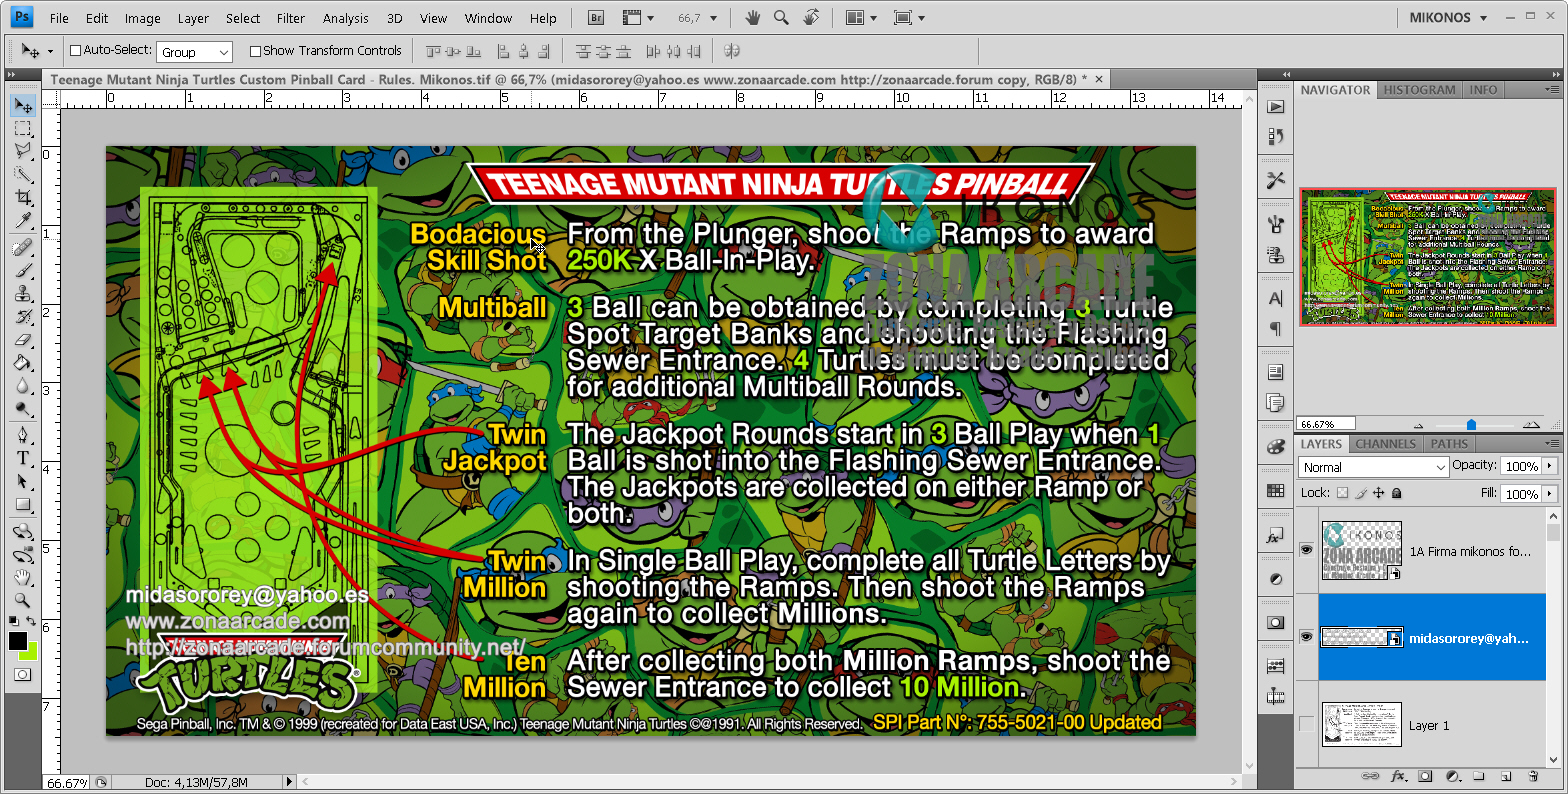 Teenage Mutant Ninja Turtles Pinball Card Customized - Rules. Mikonos1